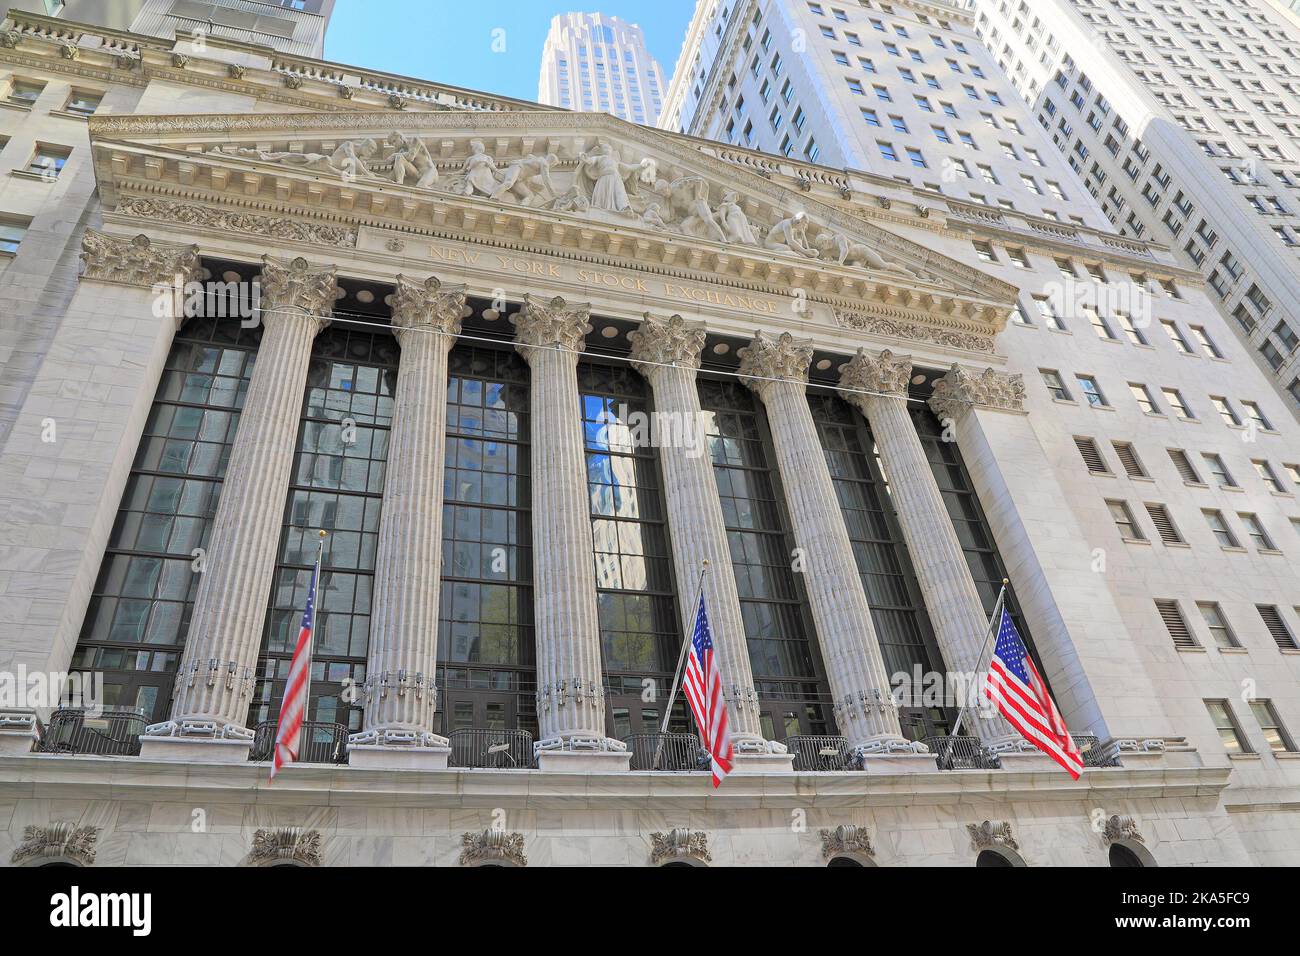 Bourse de New York à Wall Street, Lower Manhattan. C'est la plus grande bourse au monde par capitalisation boursière Banque D'Images